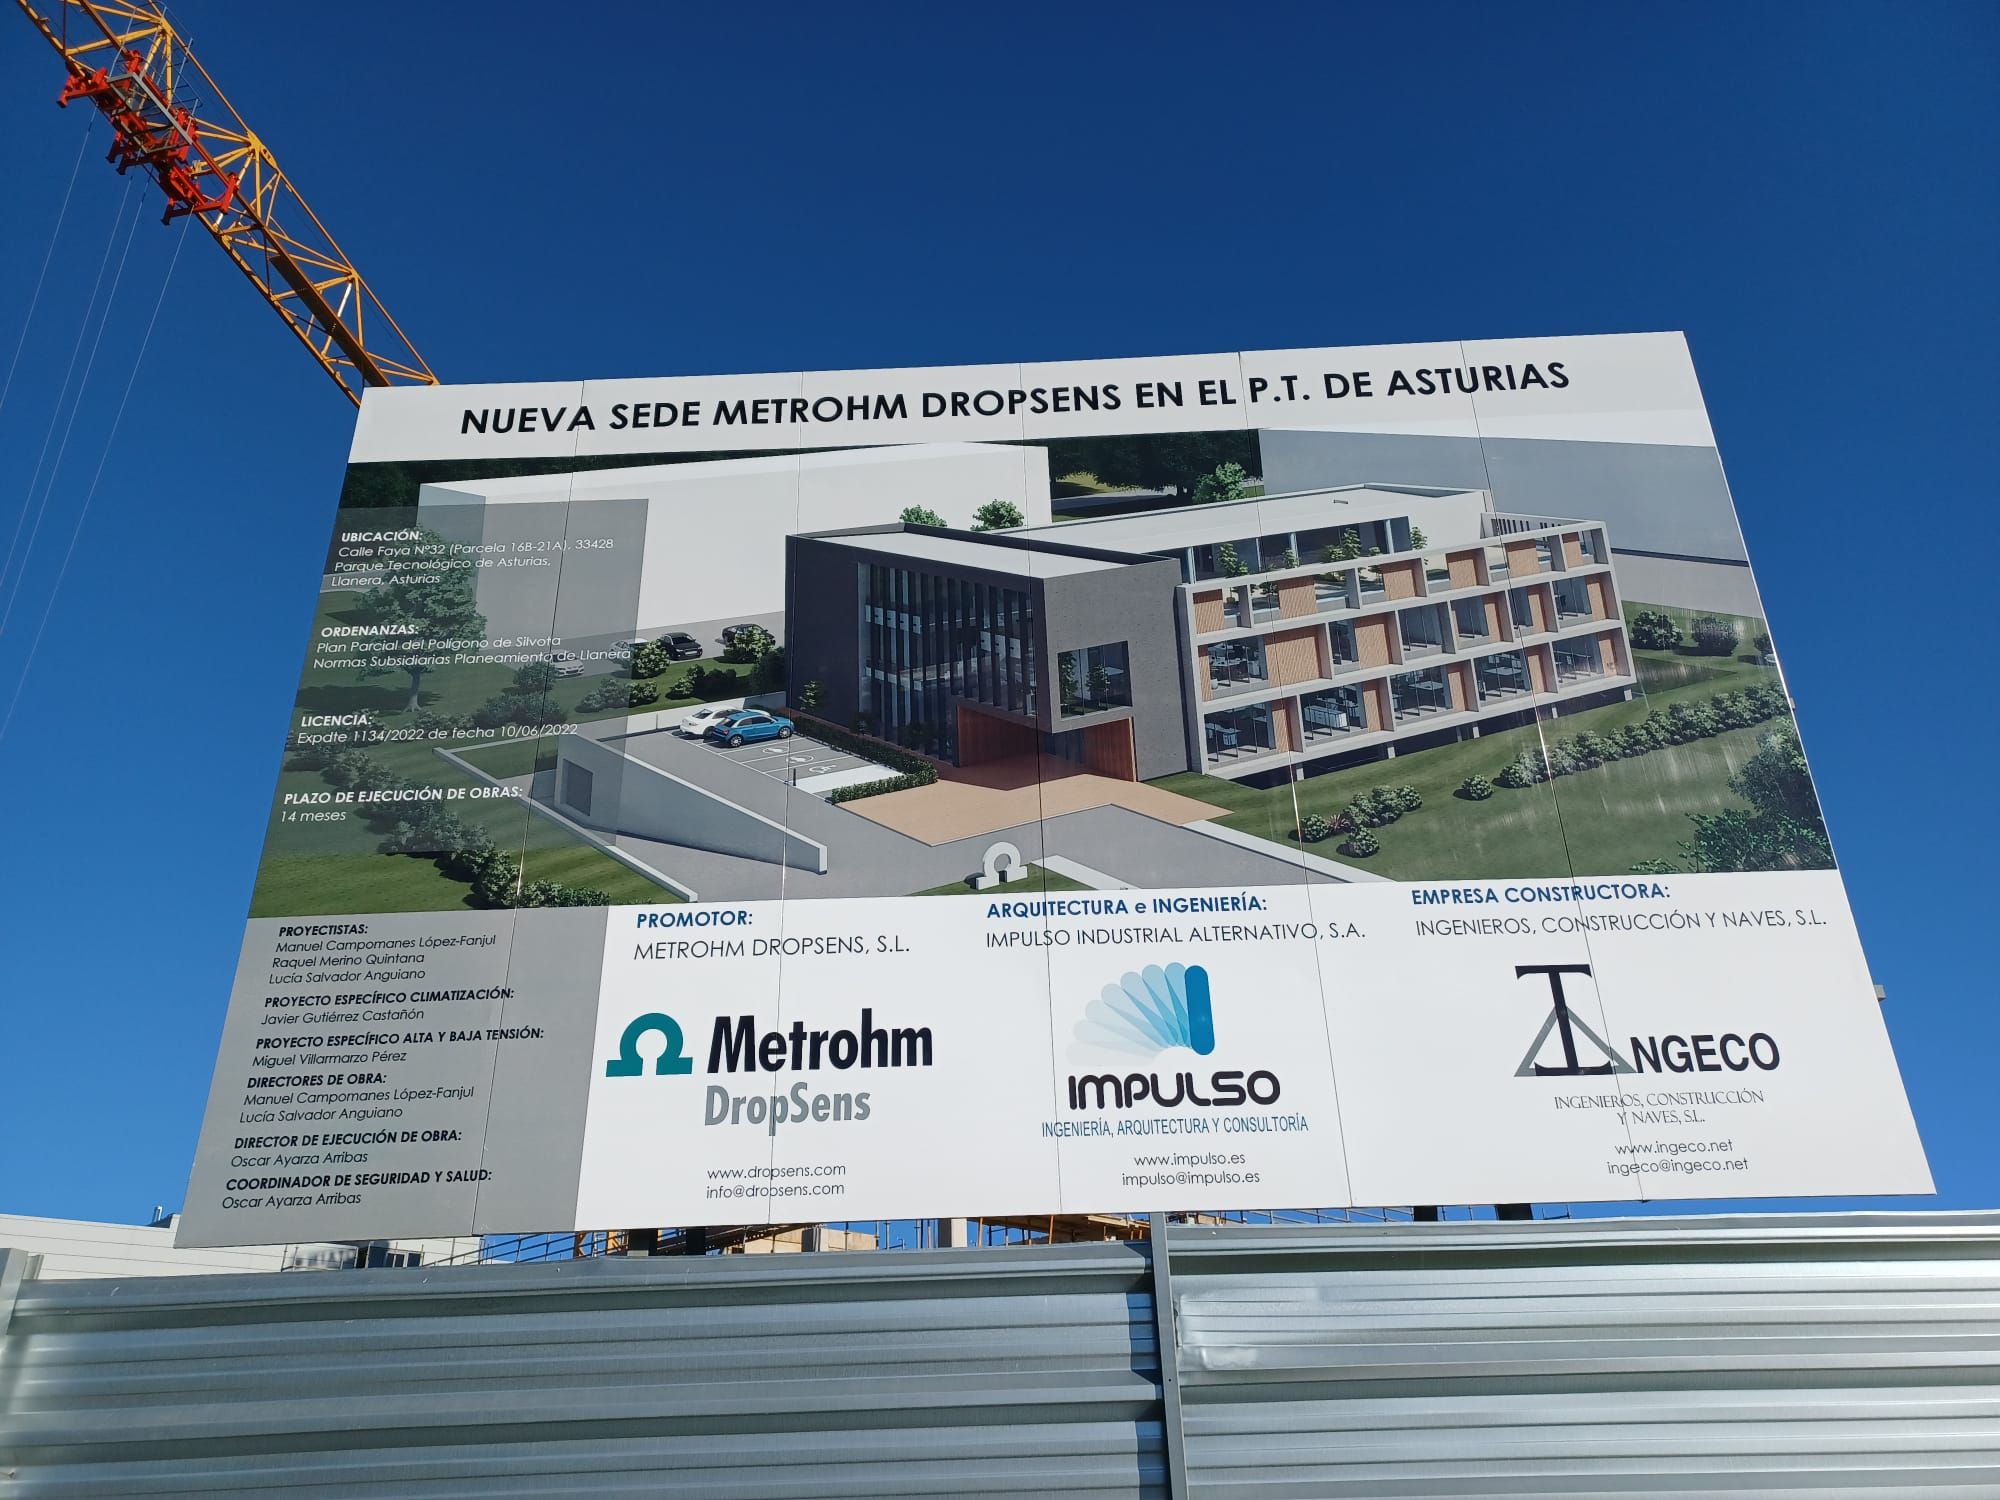 El Parque Tecnológico crece: Metrohm DropSens invierte 3,5 millones de euros en ampliar sus instalaciones en Llanera